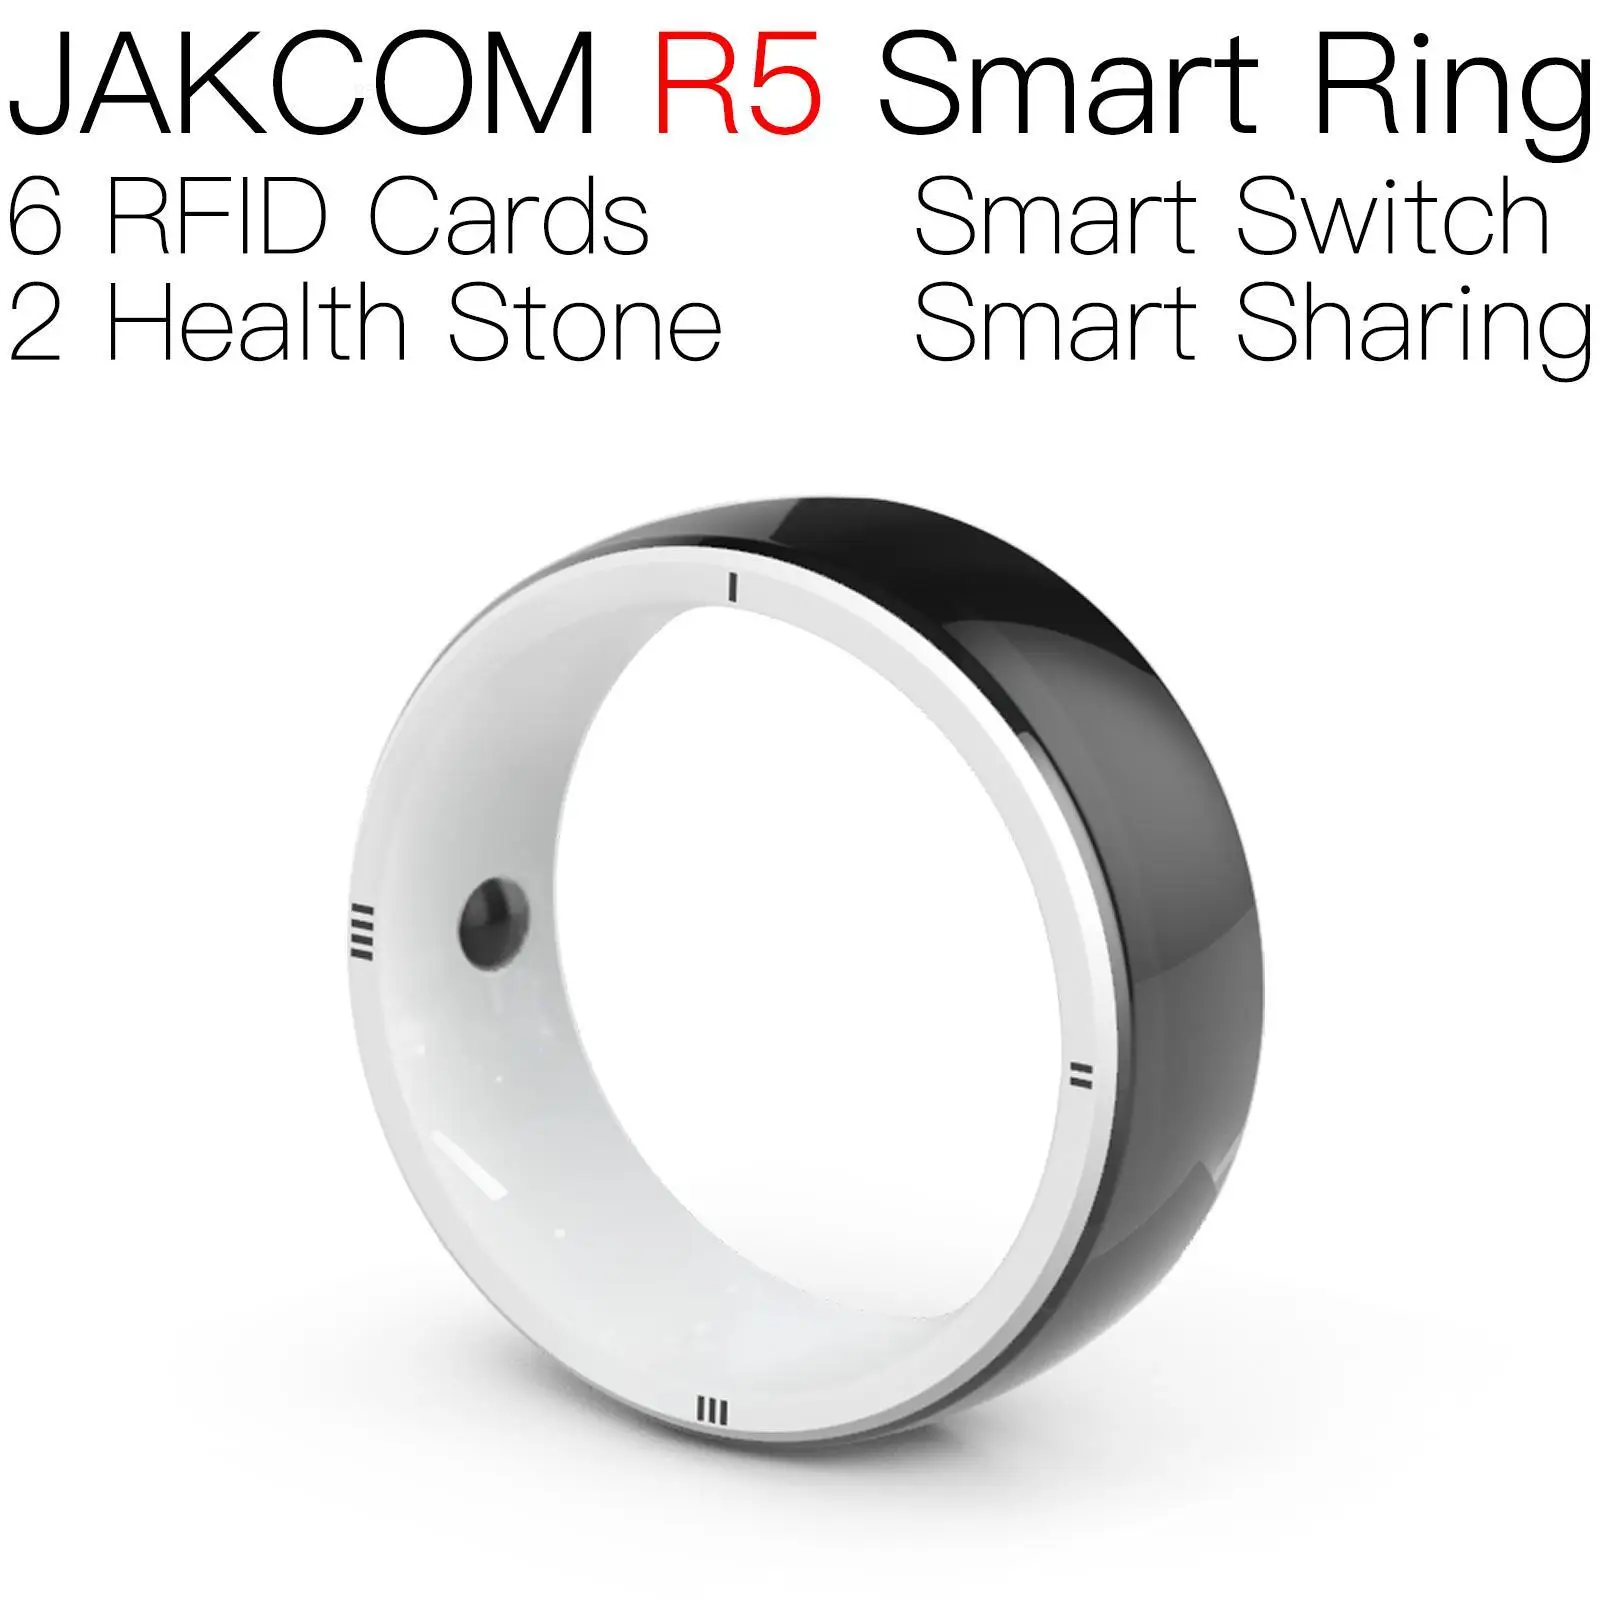 

Умное кольцо JAKCOM R5, Супер ценное, чем металлическая Стандартная карта, деловая оплата, смарт-браслет, телефон или домофон, размер кольца 49 мм